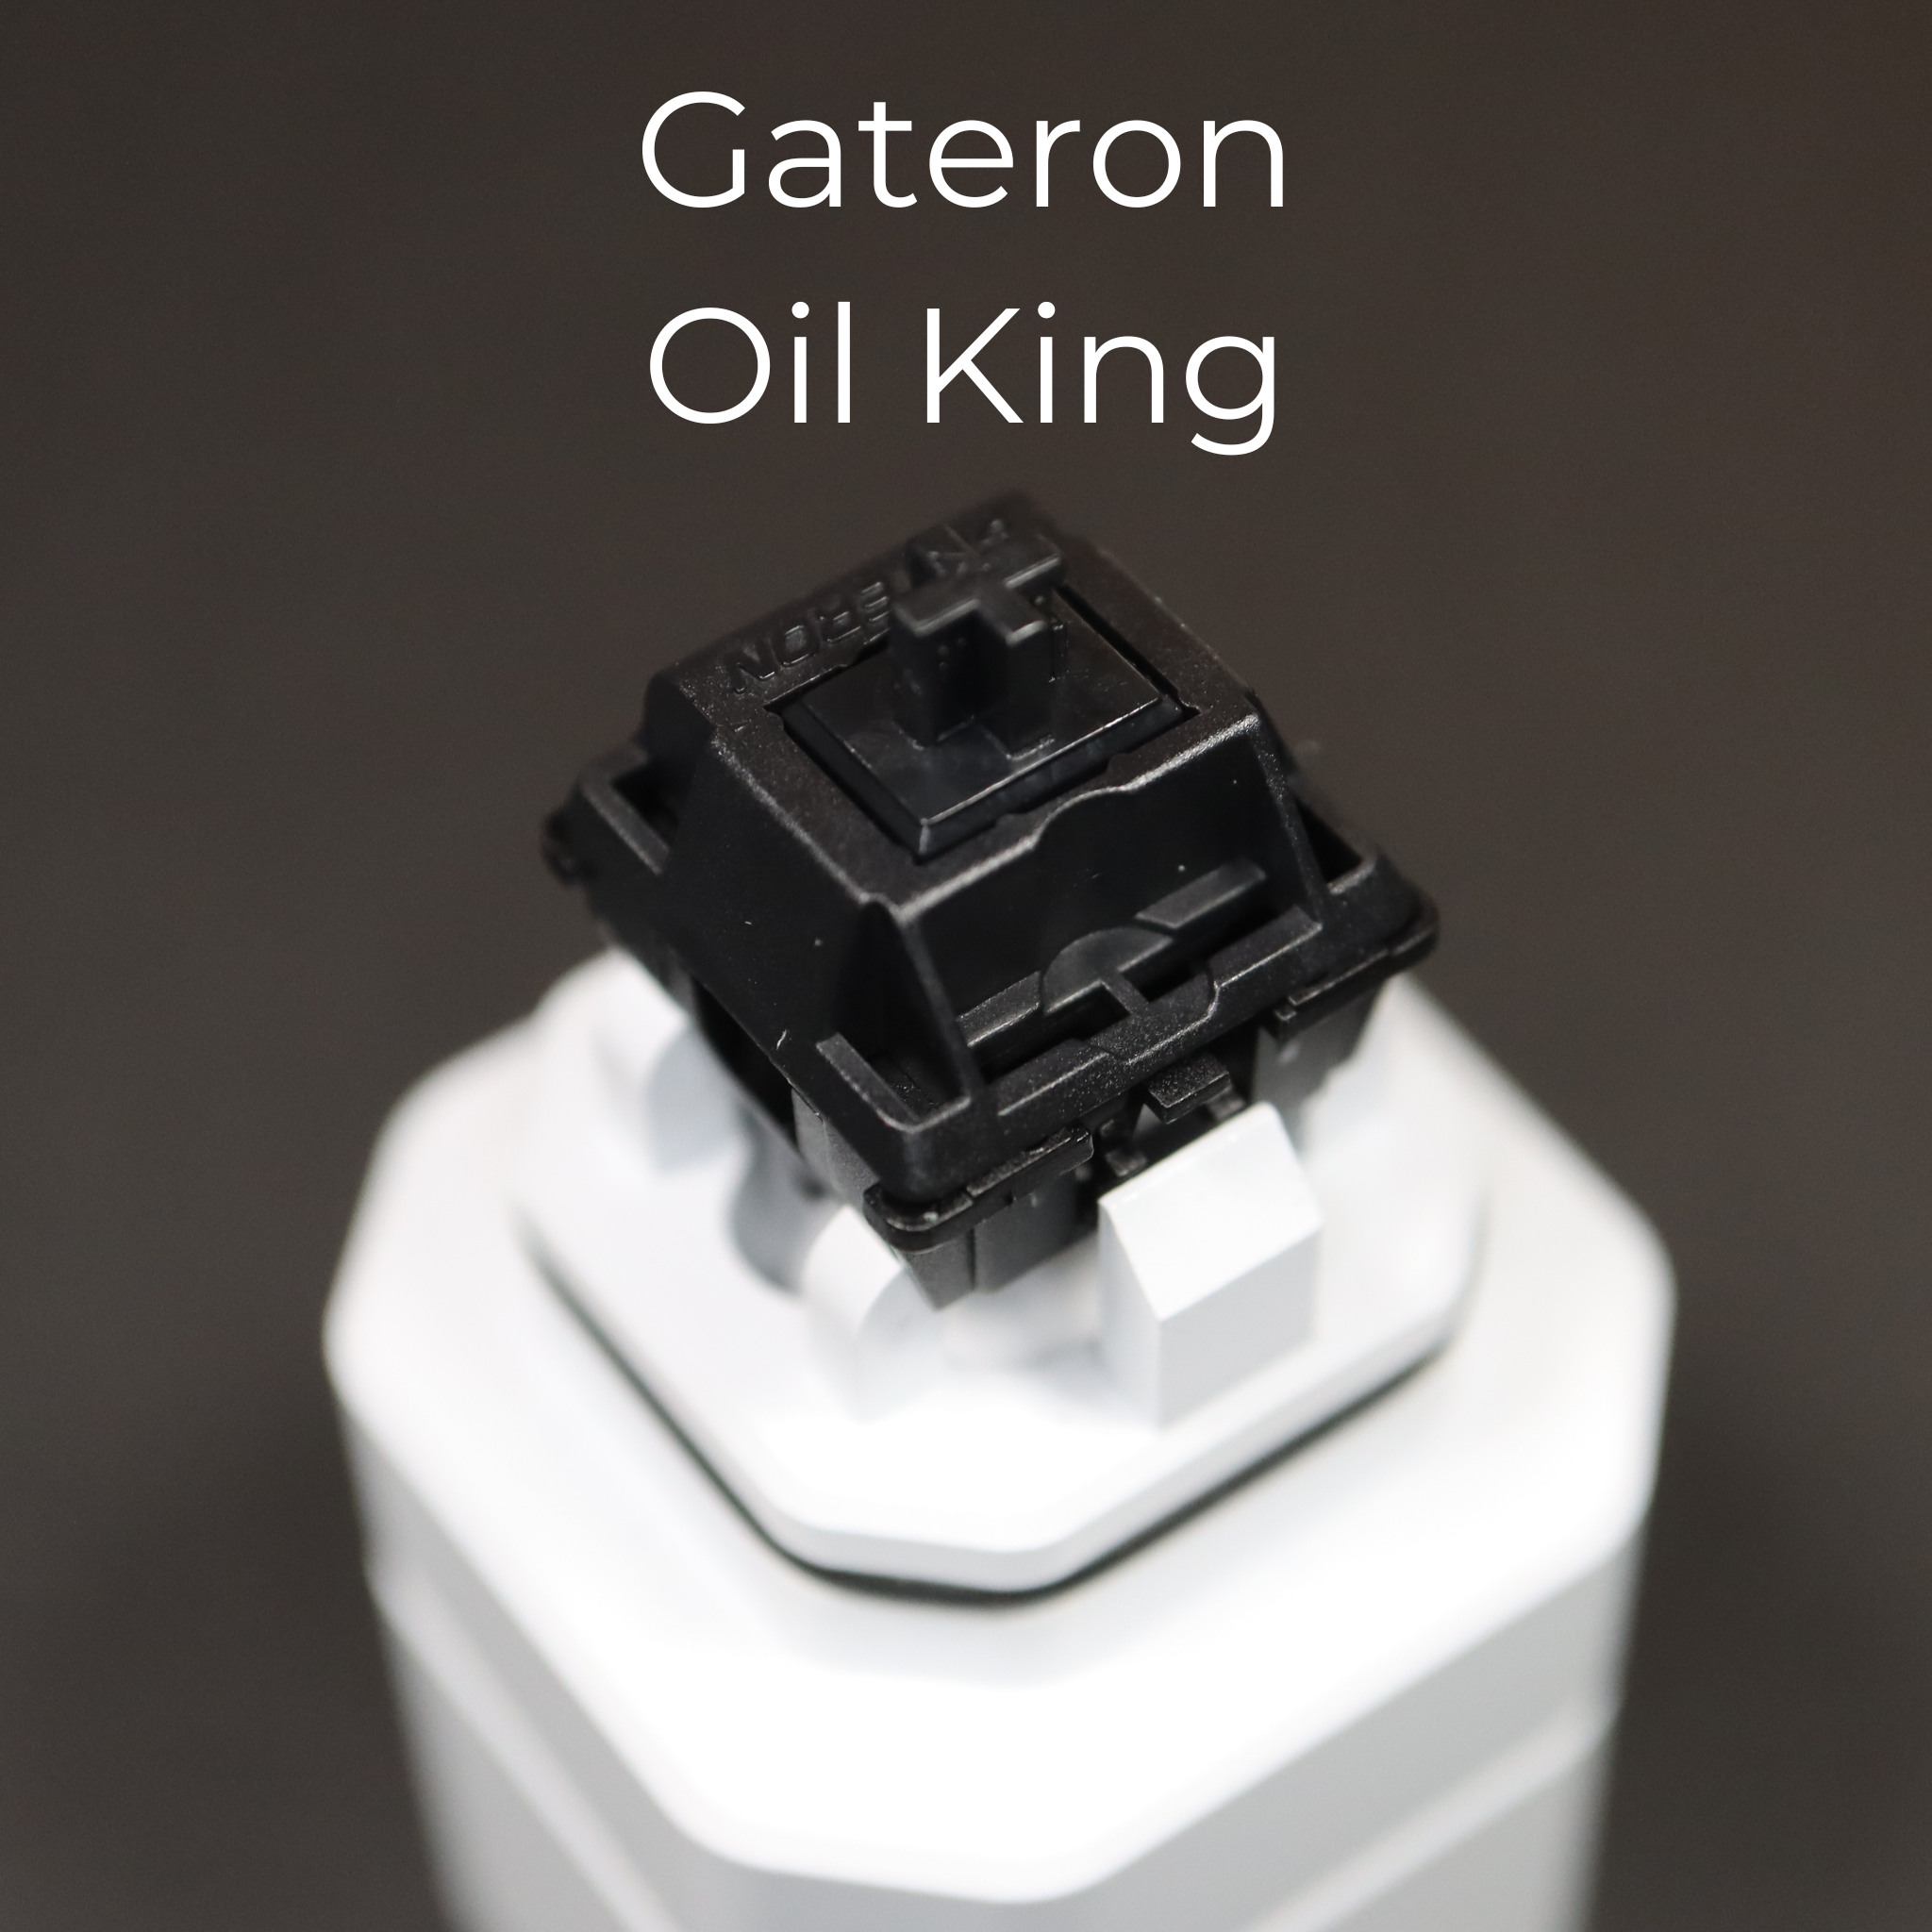 Oil Kings by Gateron – Ringer Keys